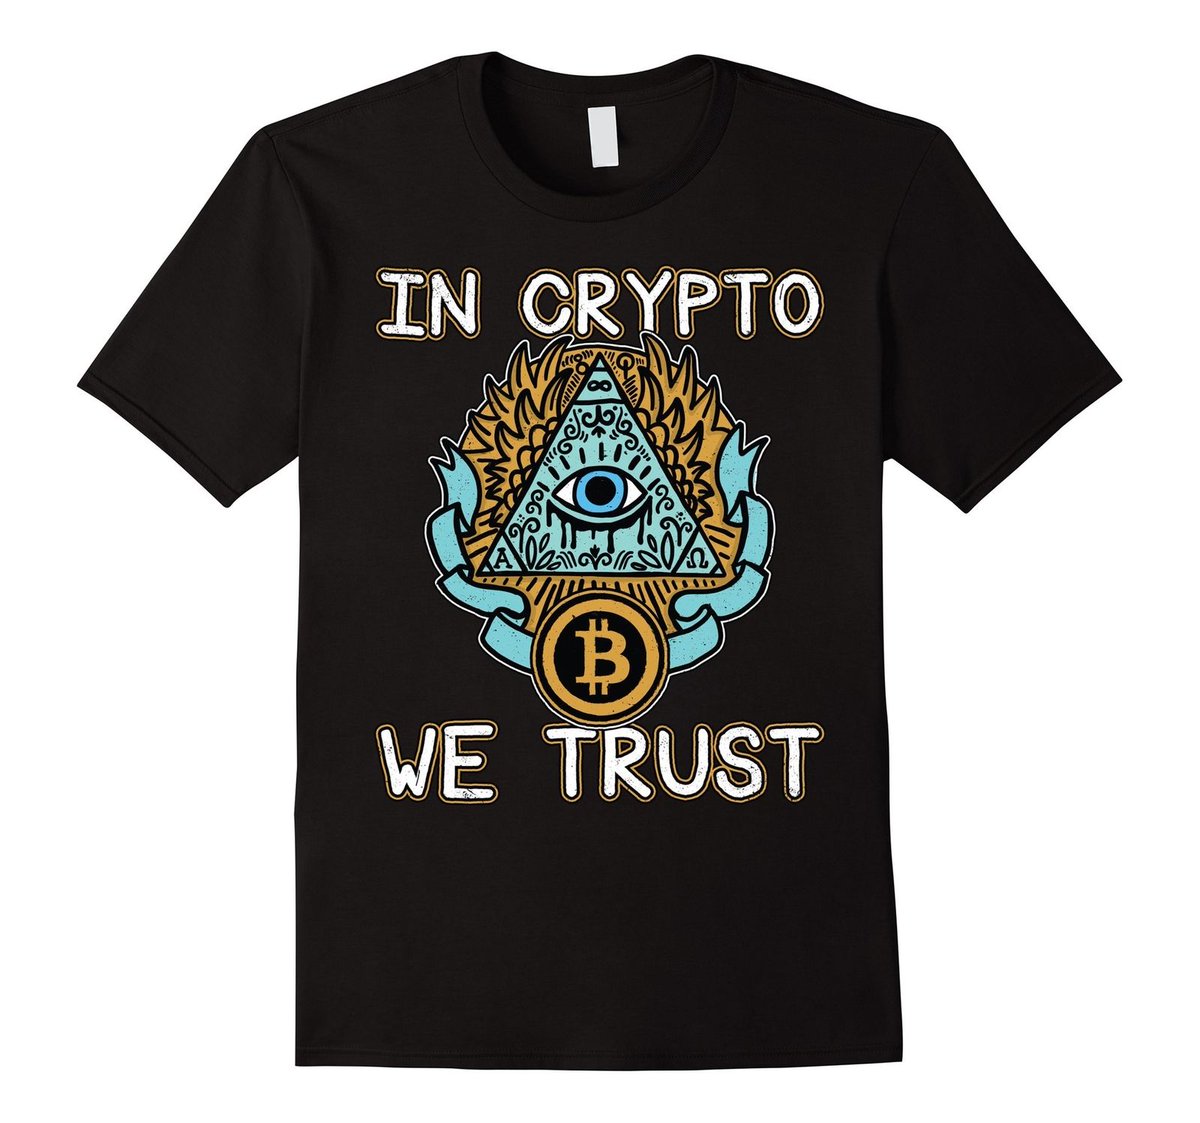 crypto merchandise uk